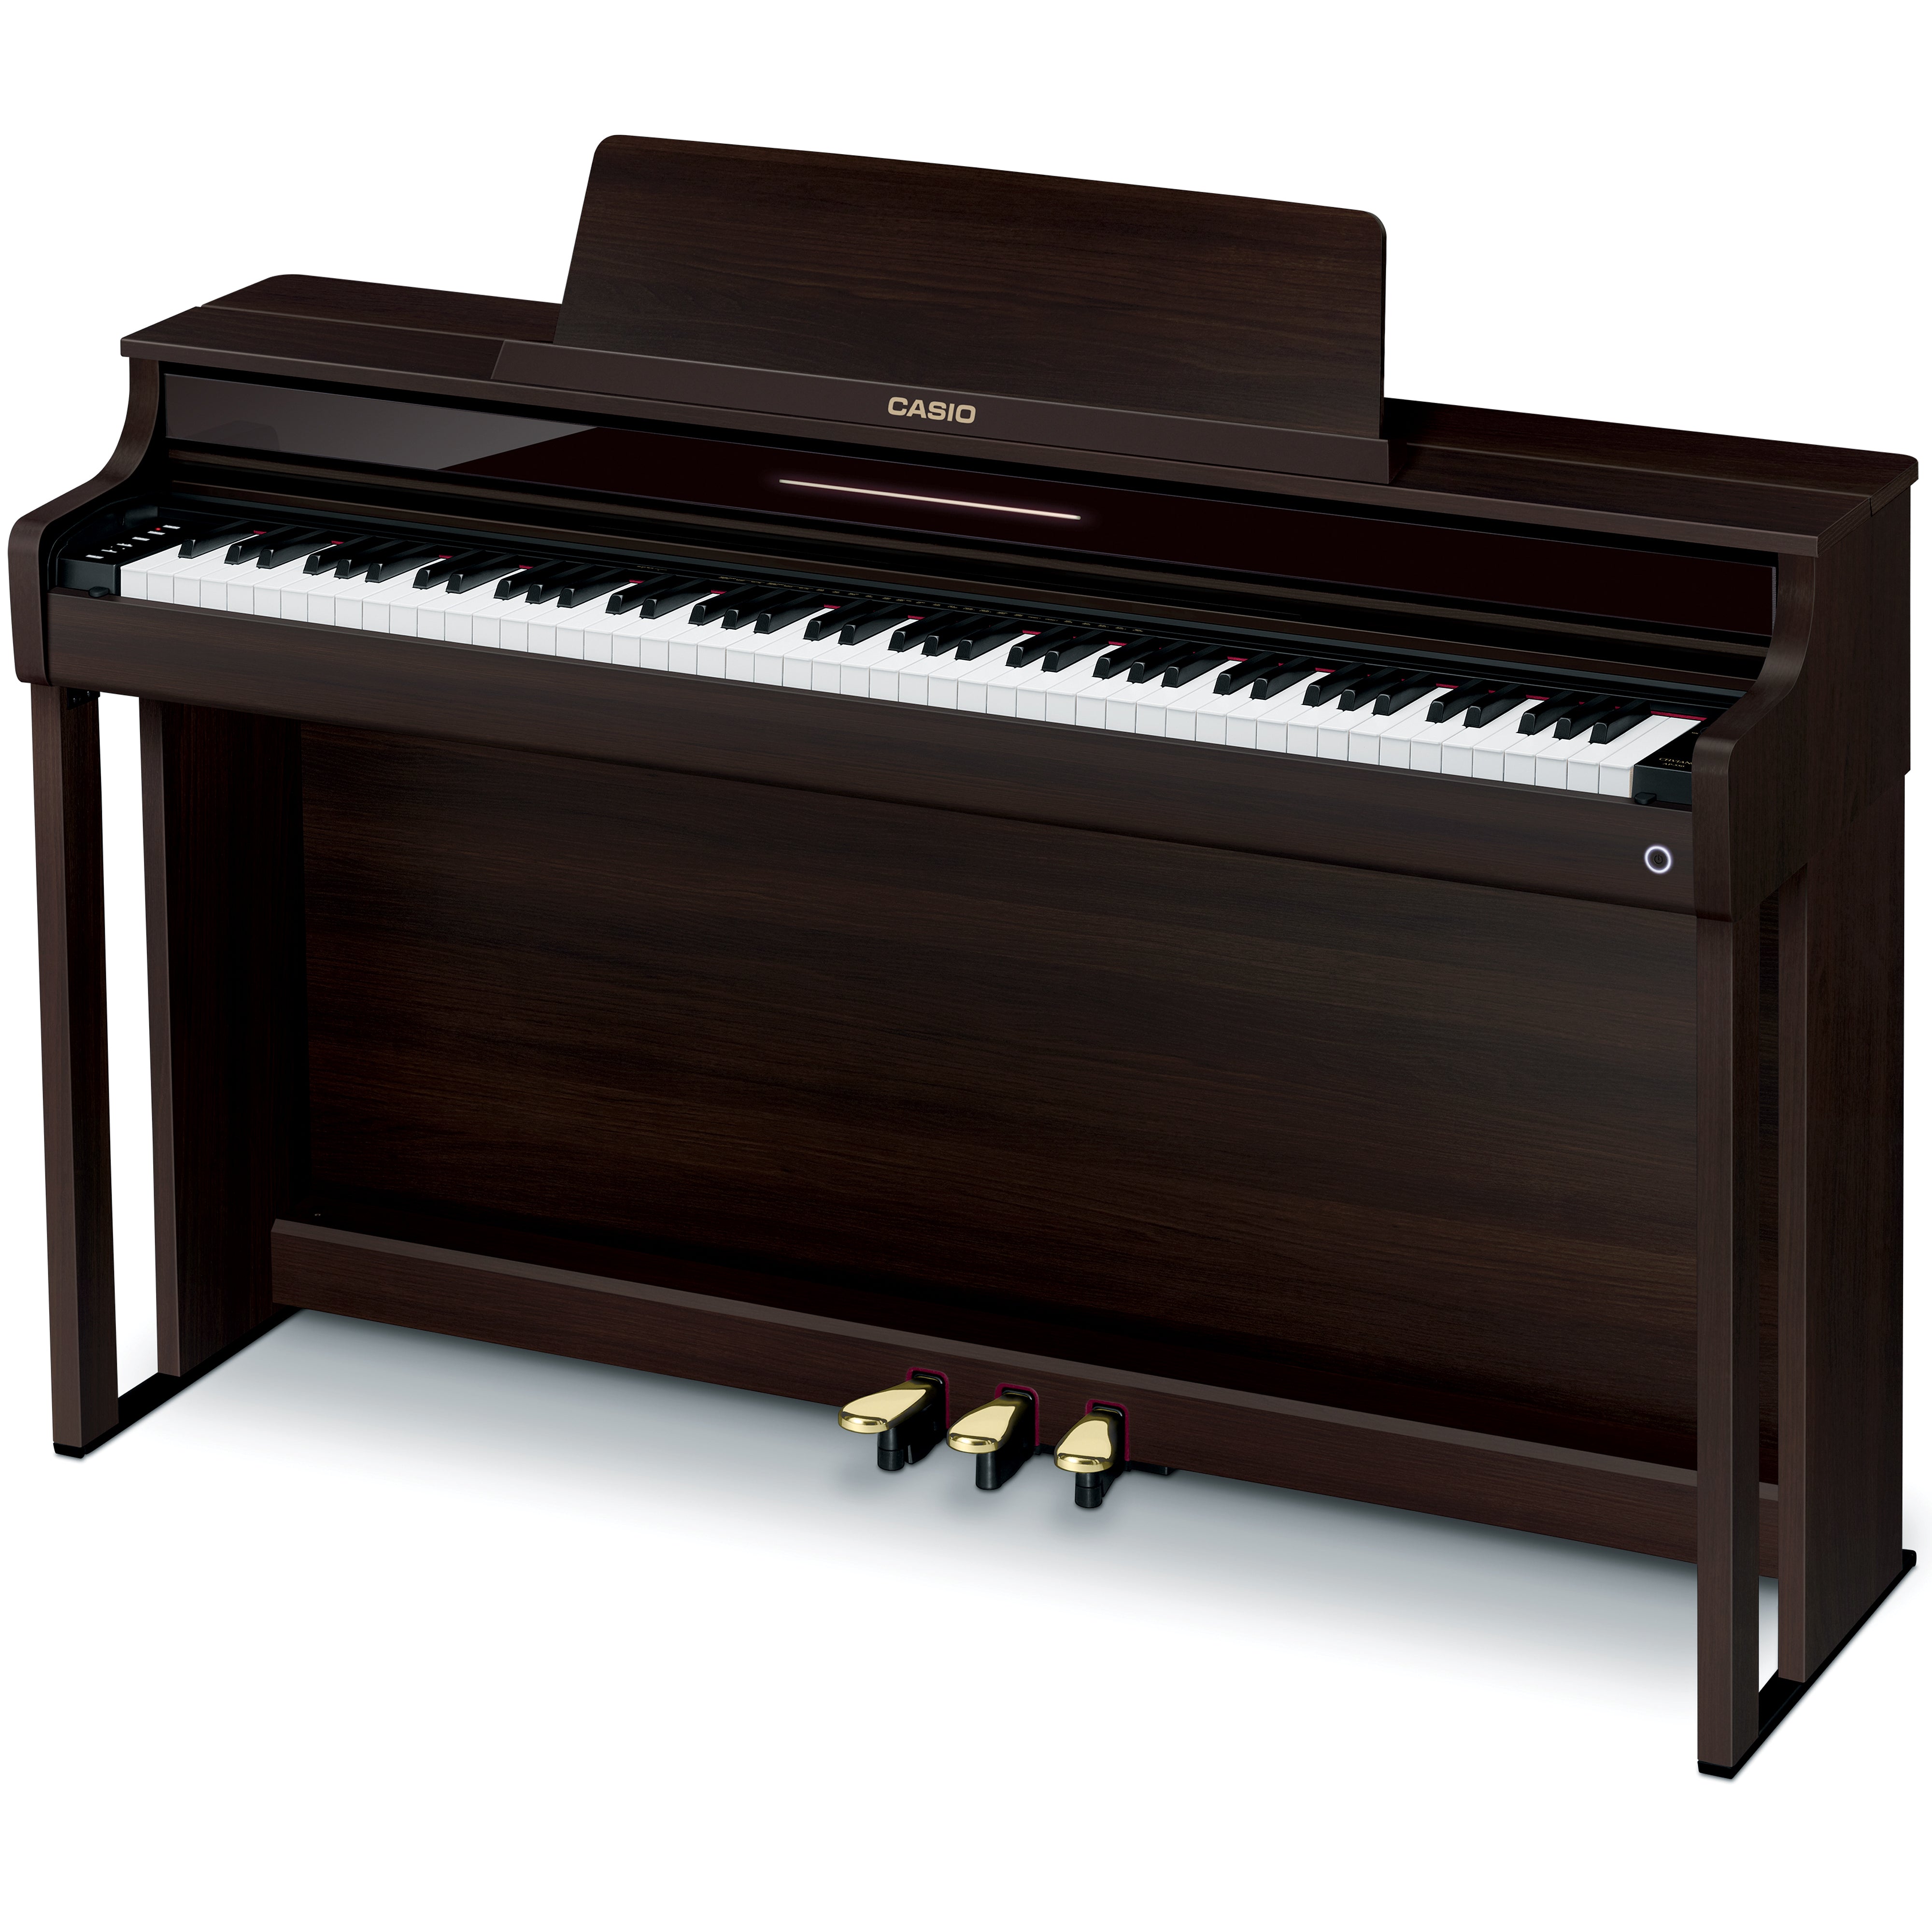 Casio Celviano AP-550 Digital Piano - Brown - facing left